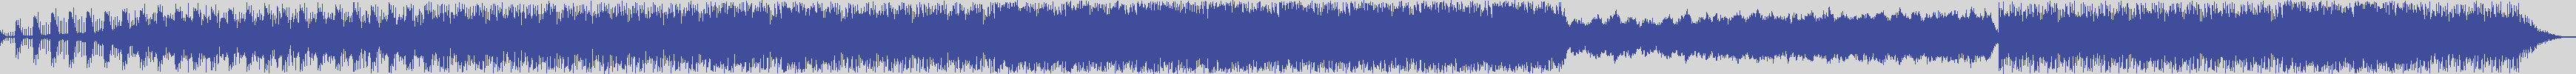 noclouds_chillout [NOC114] R. Stecca - Kasbha [Original Mix] audio wave form